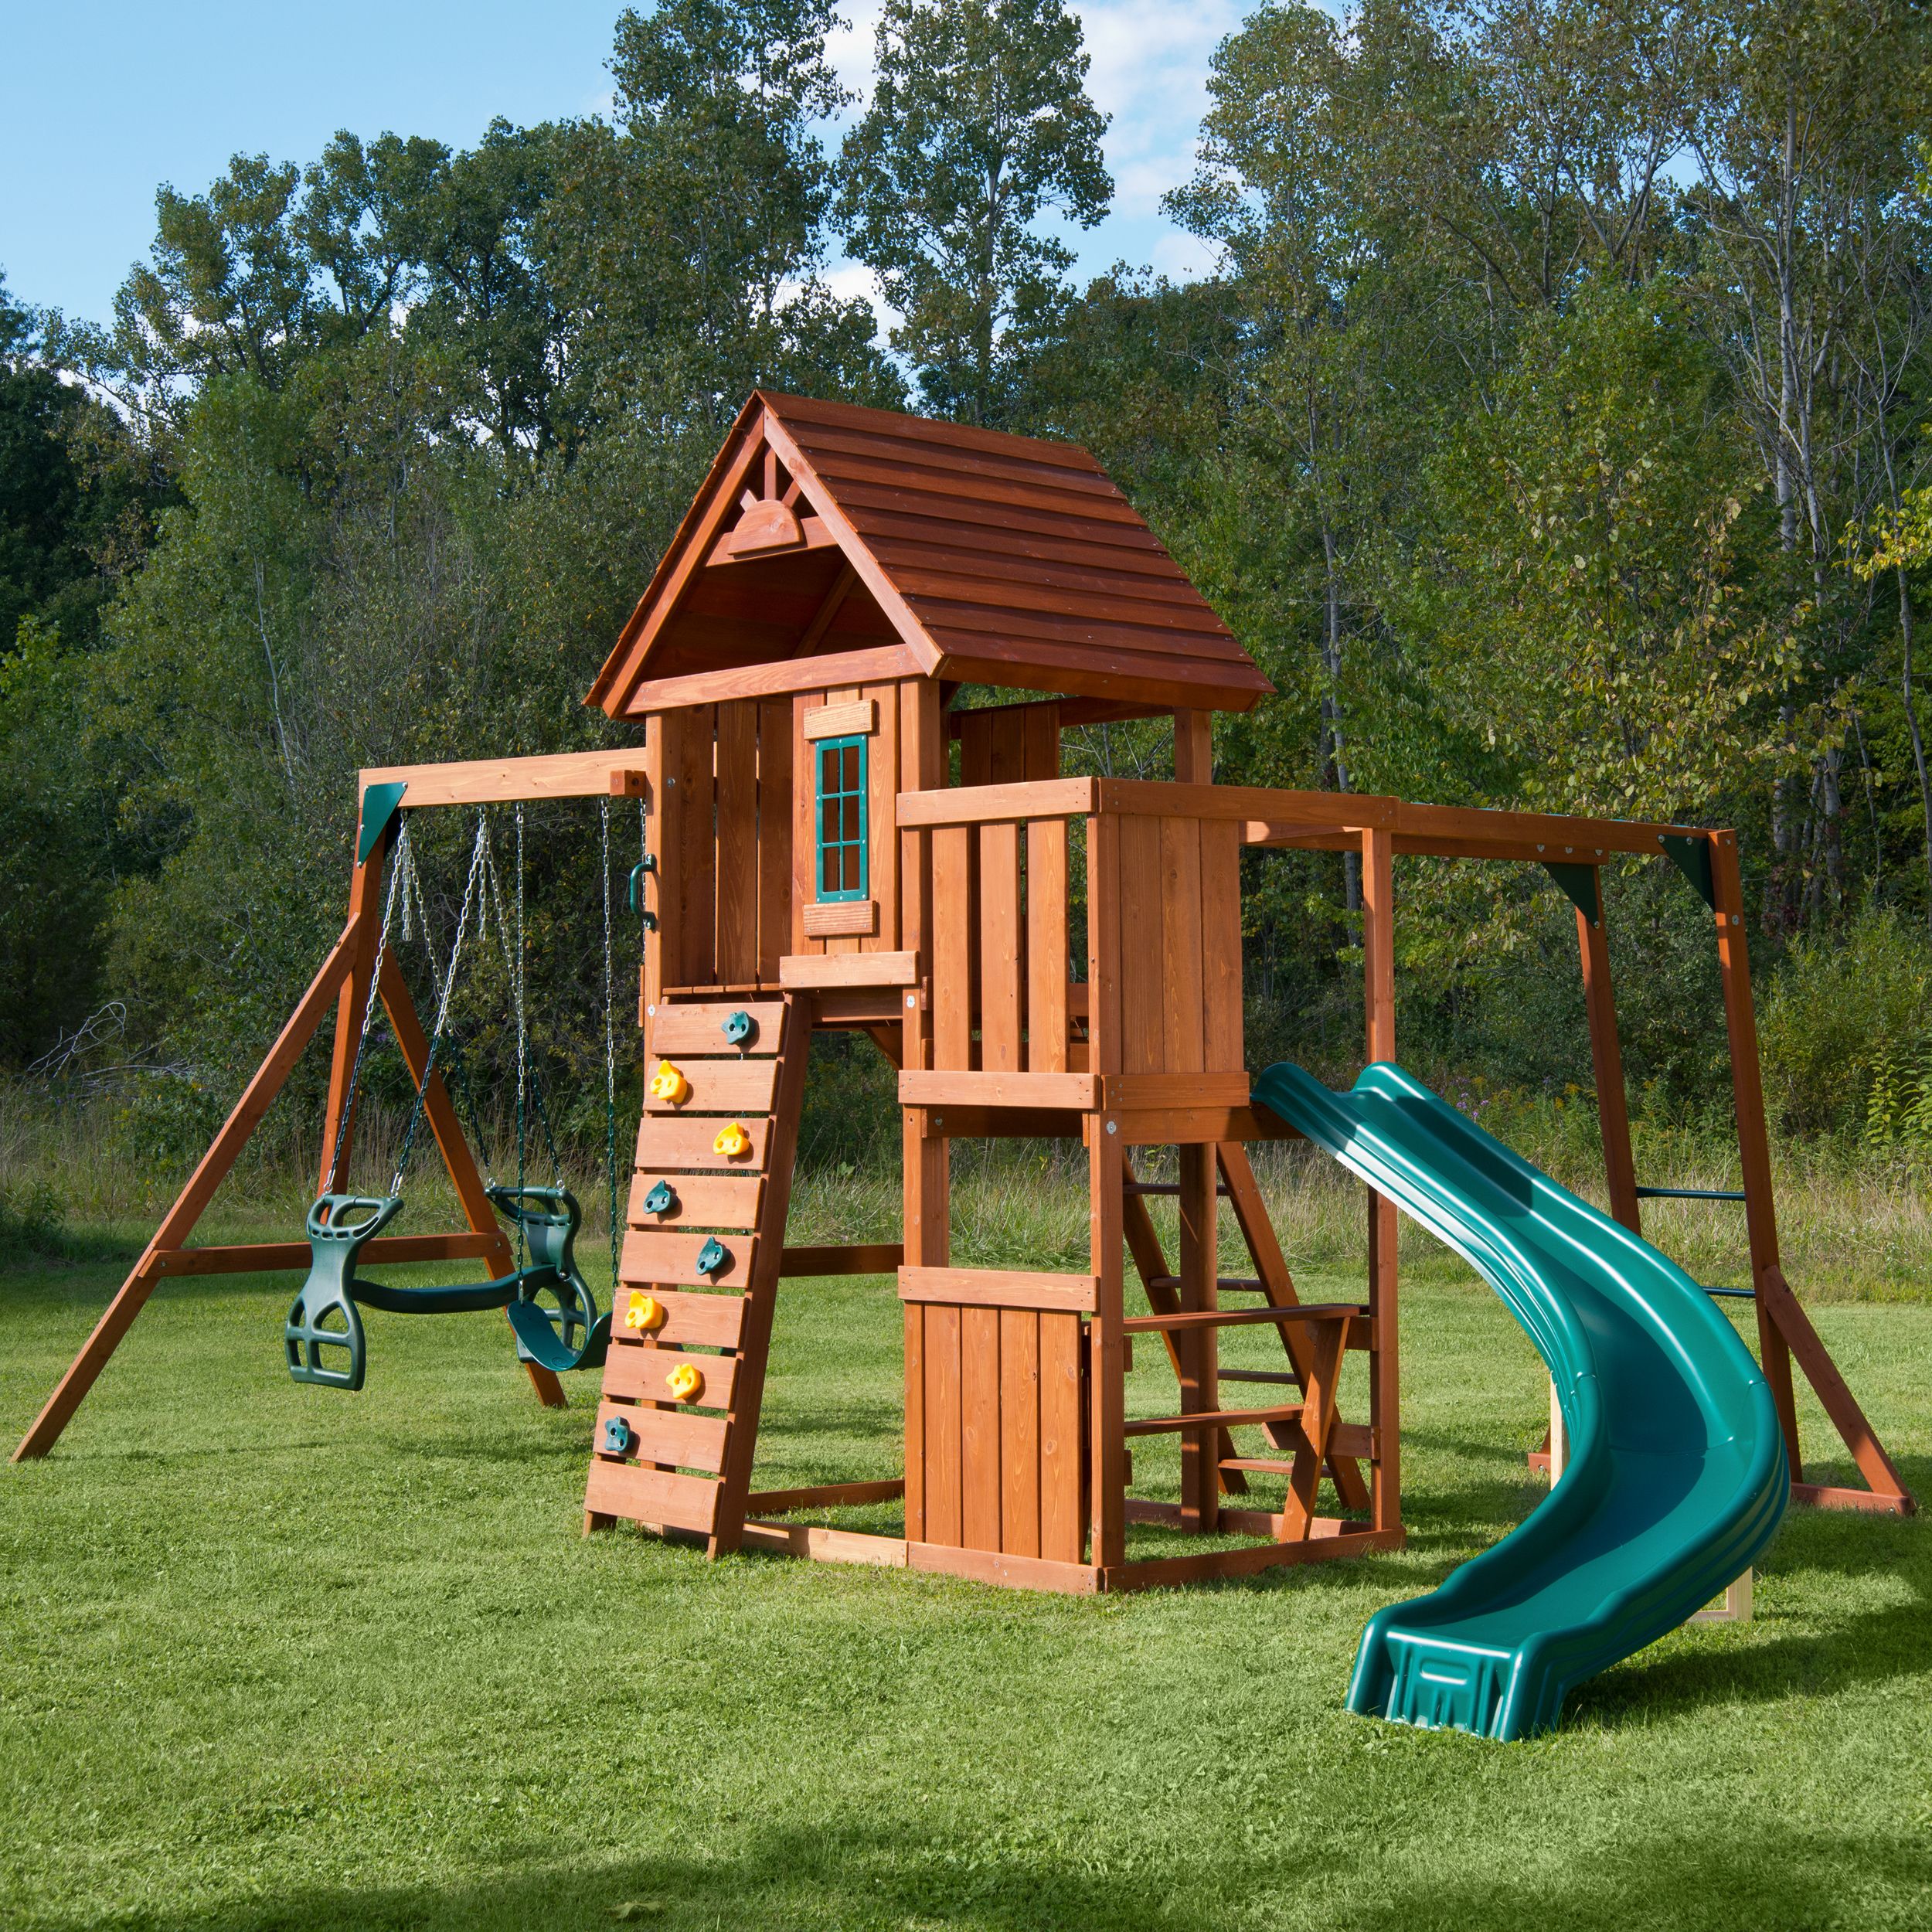 Swing-N-Slide Cedar Brook Wooden Backyard Play Set with Monkey Bars, Swings, and Curved Slide - image 2 of 6